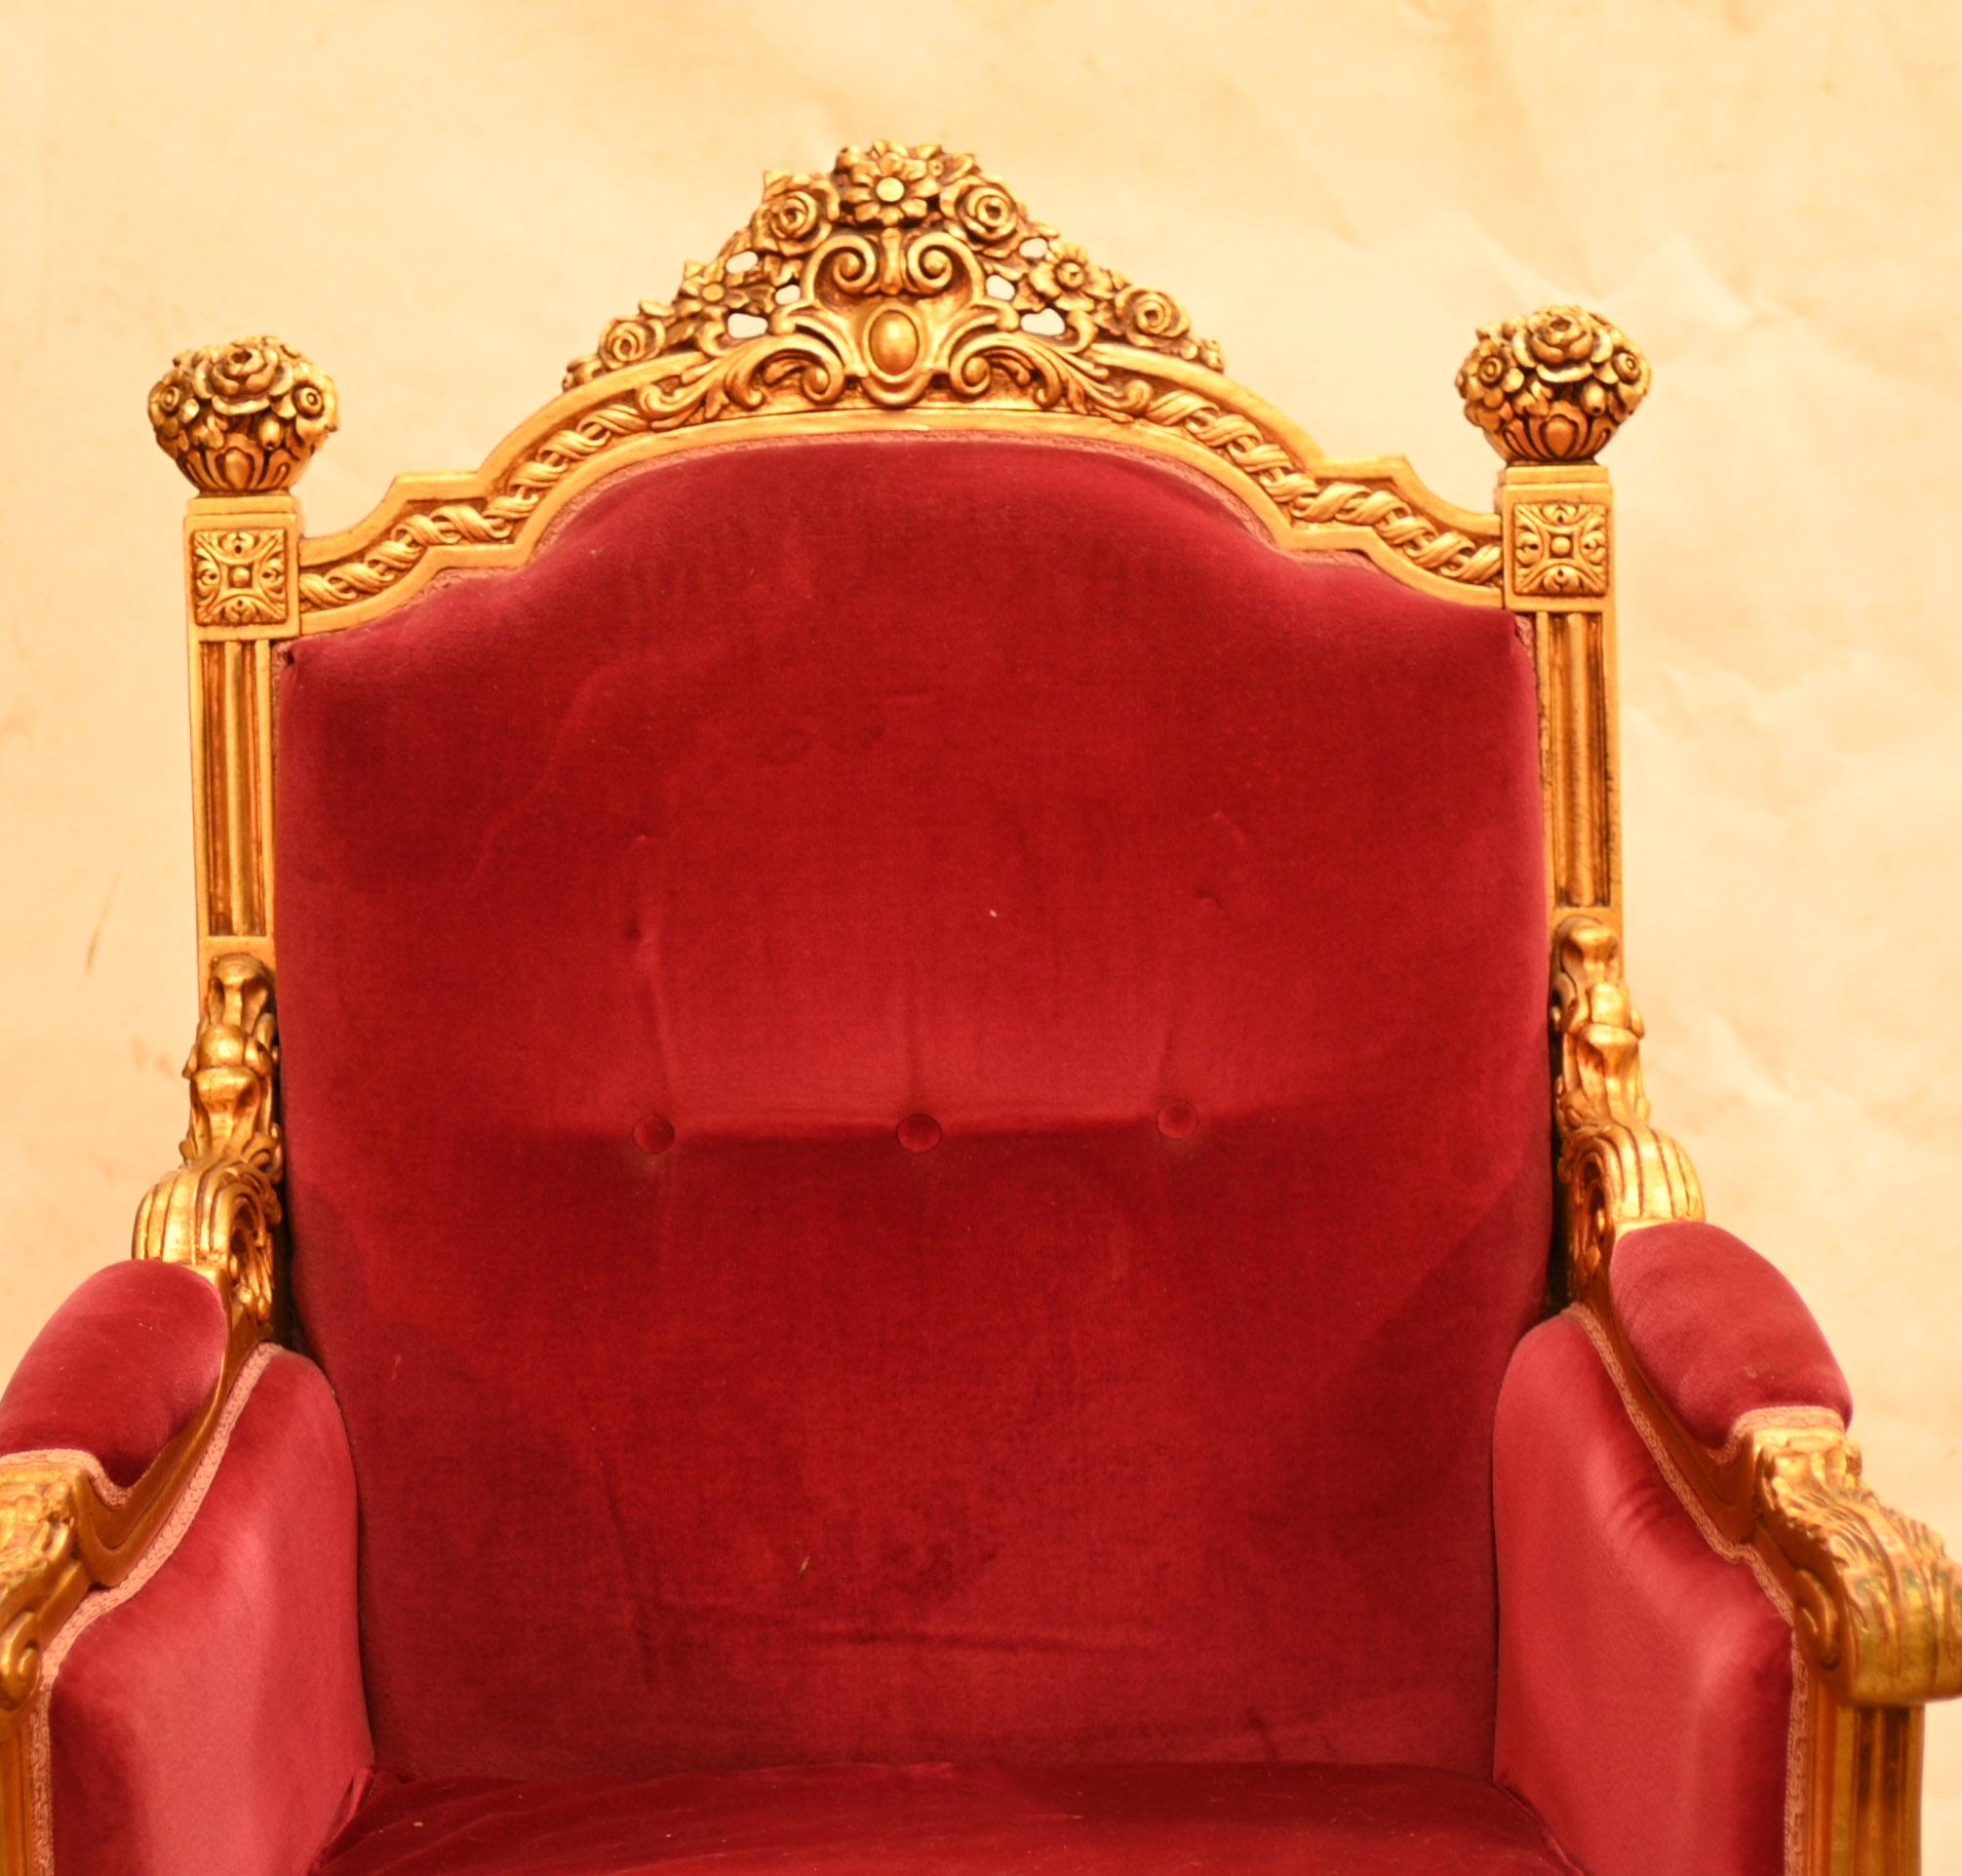 Paire de fauteuils dorés haut de gamme de style Empire
Paire élégante, très confortable pour s'asseoir et dont les cadres sont abondamment sculptés
La finition dorée lui confère un aspect royal
Nous le datons d'environ les années 1930
Acheté à